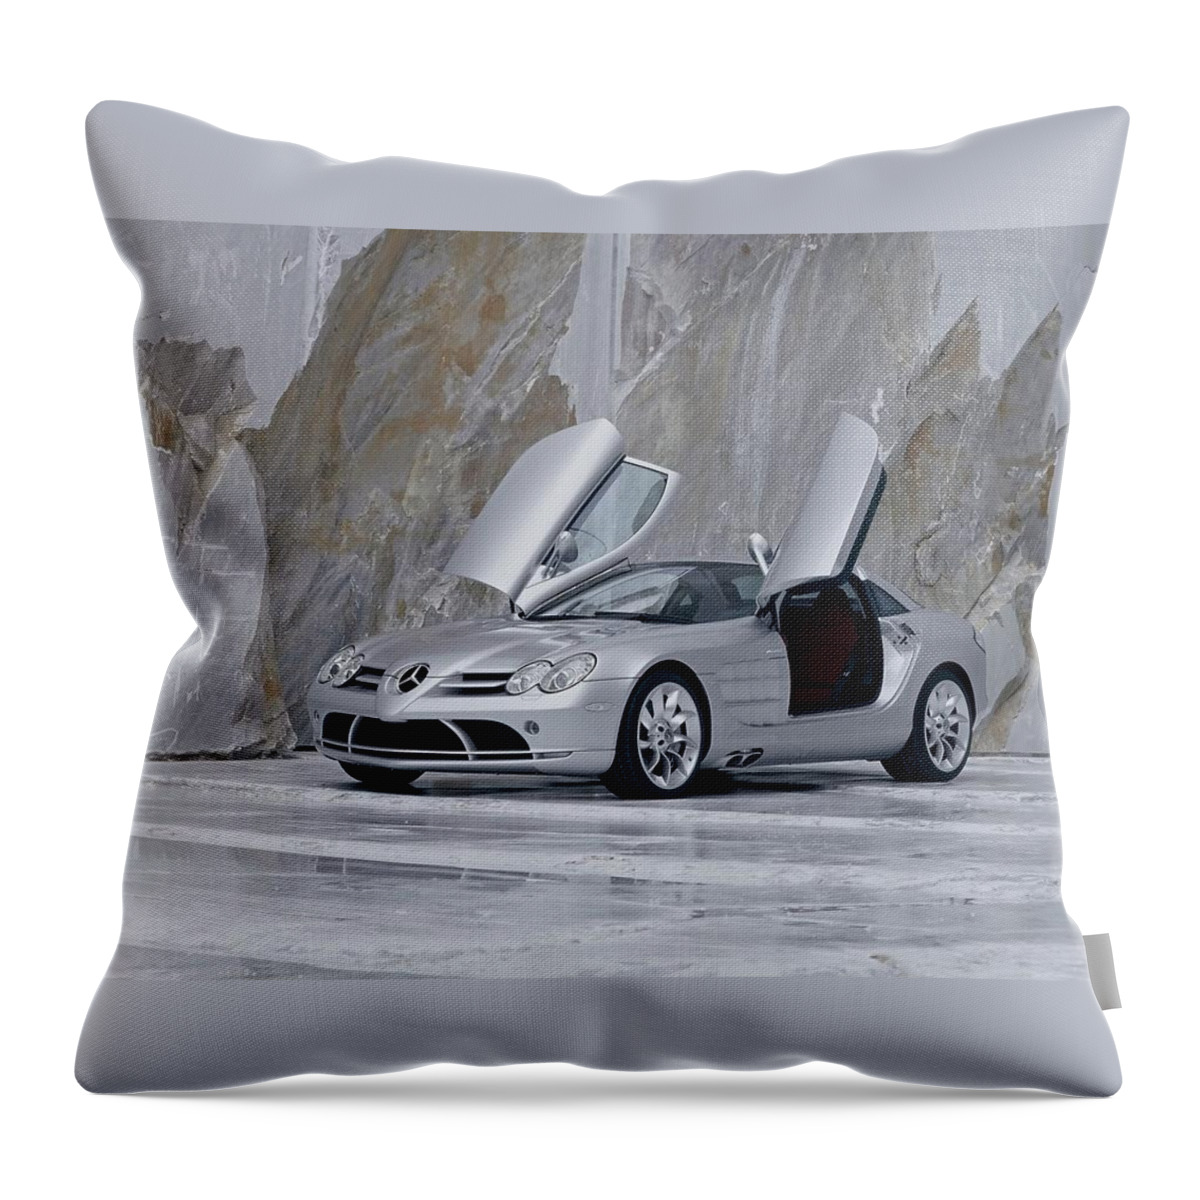 Mercedes-benz Slr Mclaren Throw Pillow featuring the digital art Mercedes-Benz SLR McLaren by Super Lovely